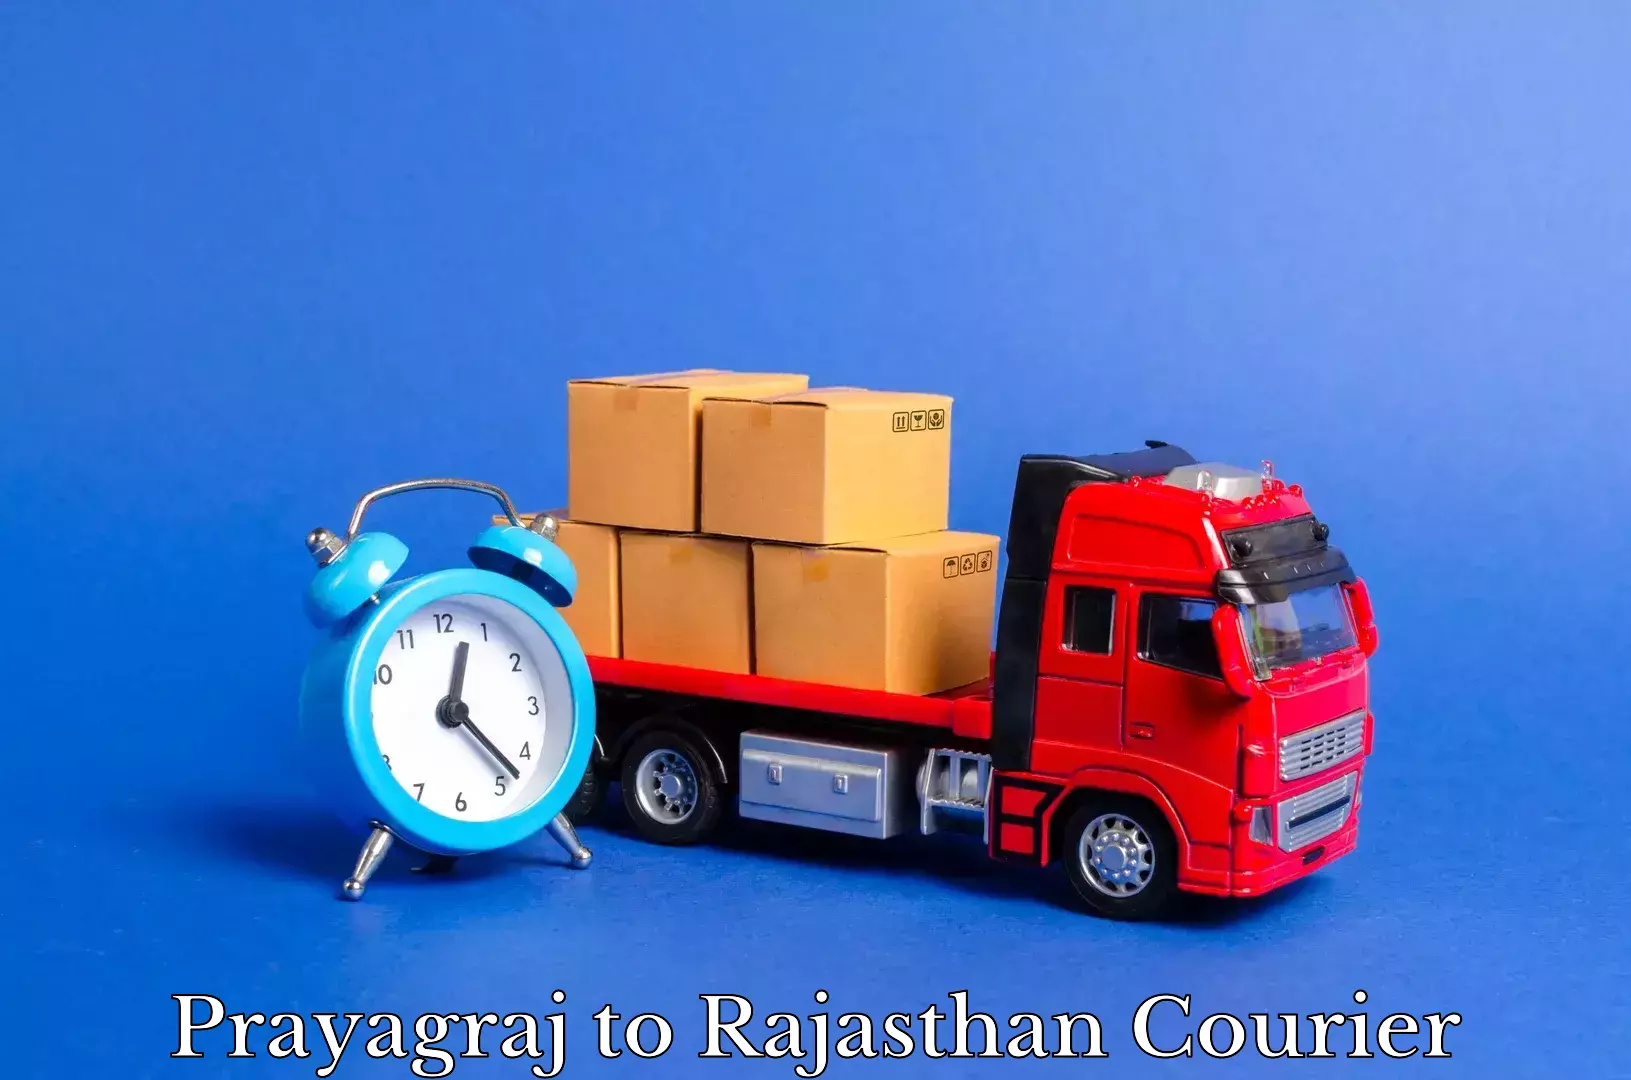 Professional furniture movers Prayagraj to Rajasthan